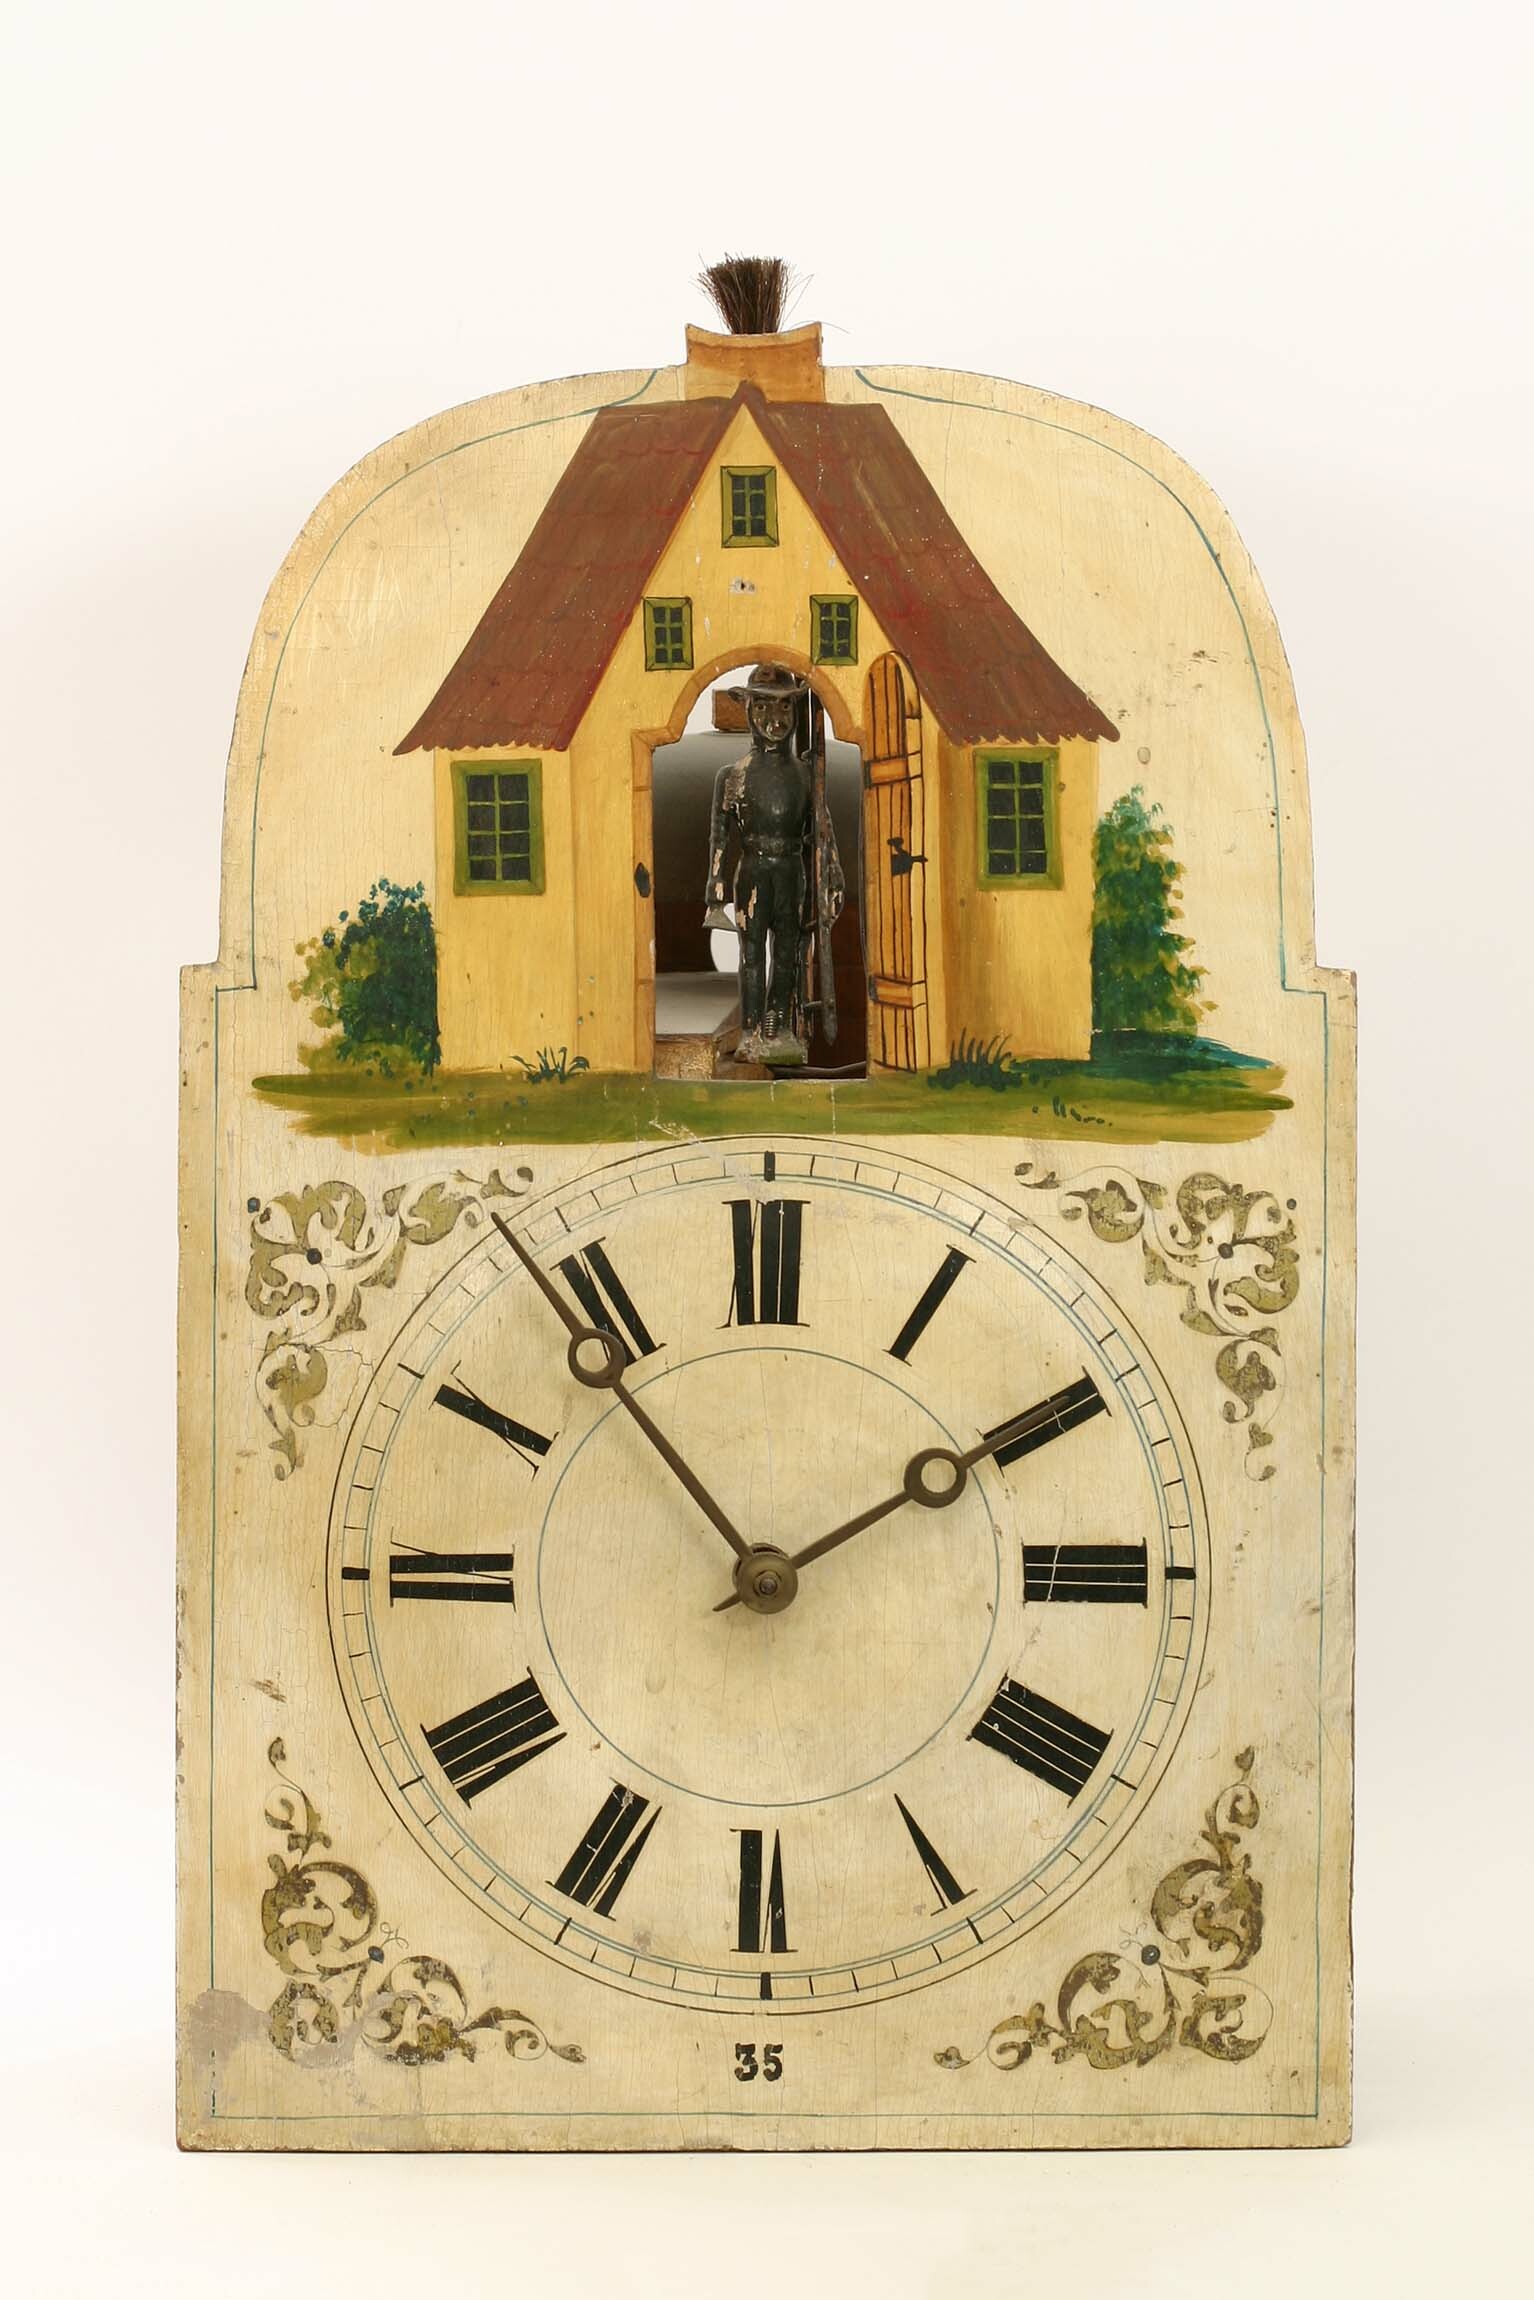 Lackschilduhr mit "Schornsteinfeger", Jacob Bäuerle, Furtwangen, um 1860 (Deutsches Uhrenmuseum CC BY-SA)